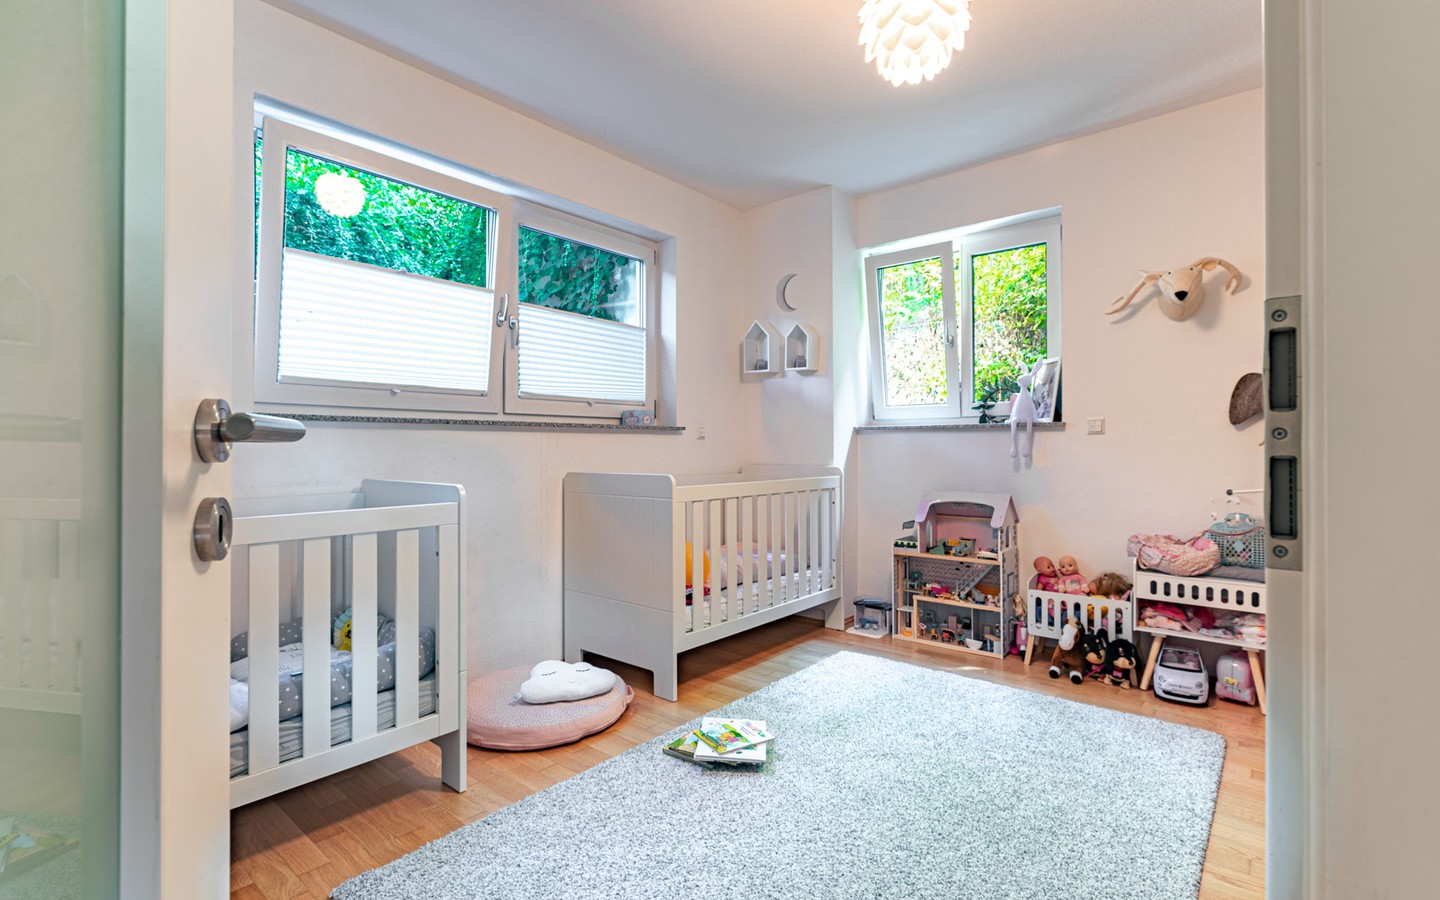 Kinderzimmer 2 - Haus-im-Haus-Feeling: Exklusive Maisonette-Wohnung mit separatem Eingang, Terrasse und Balkon